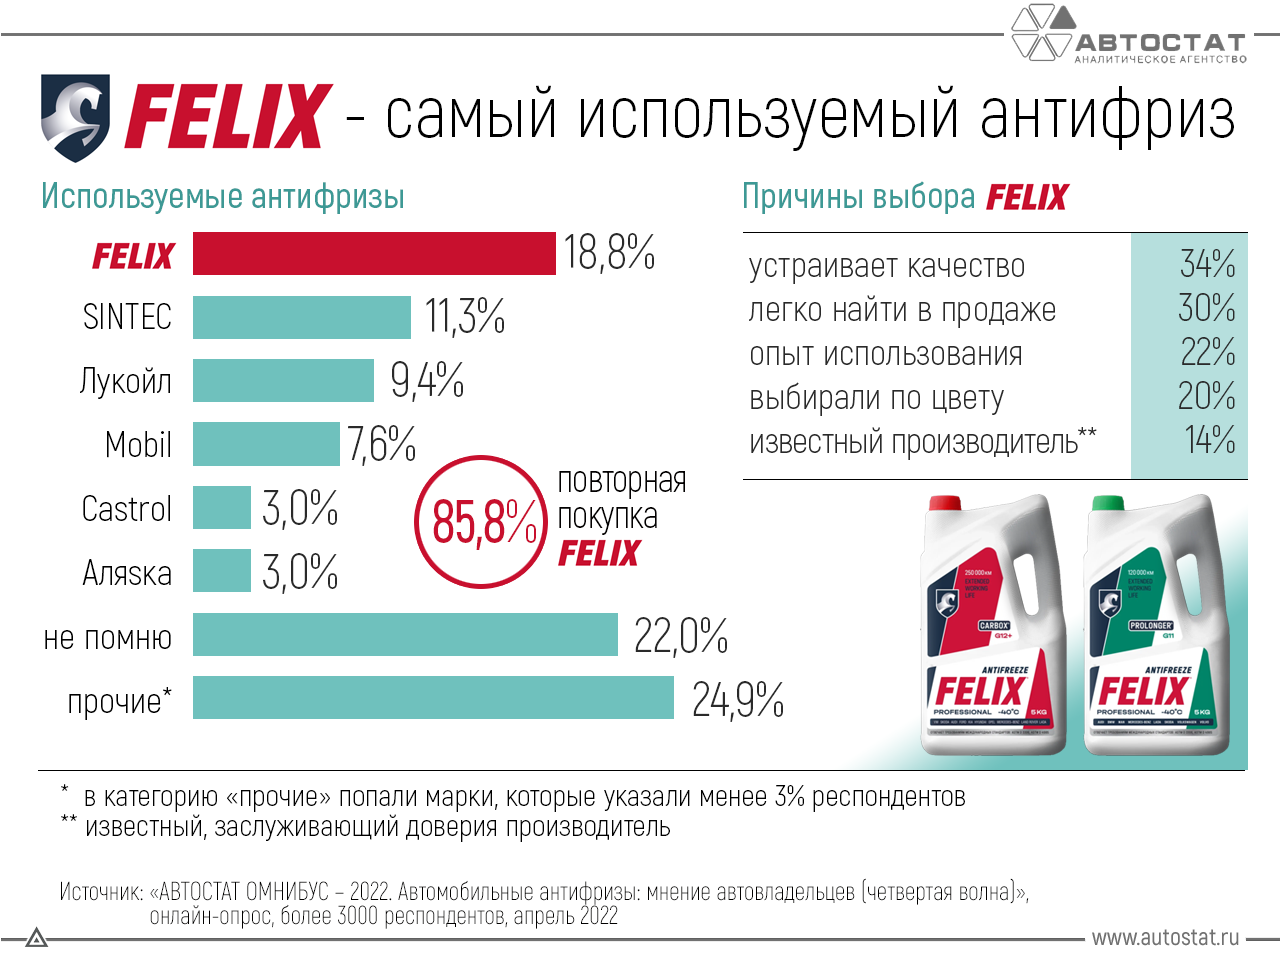 Какой антифриз в России самый популярный?